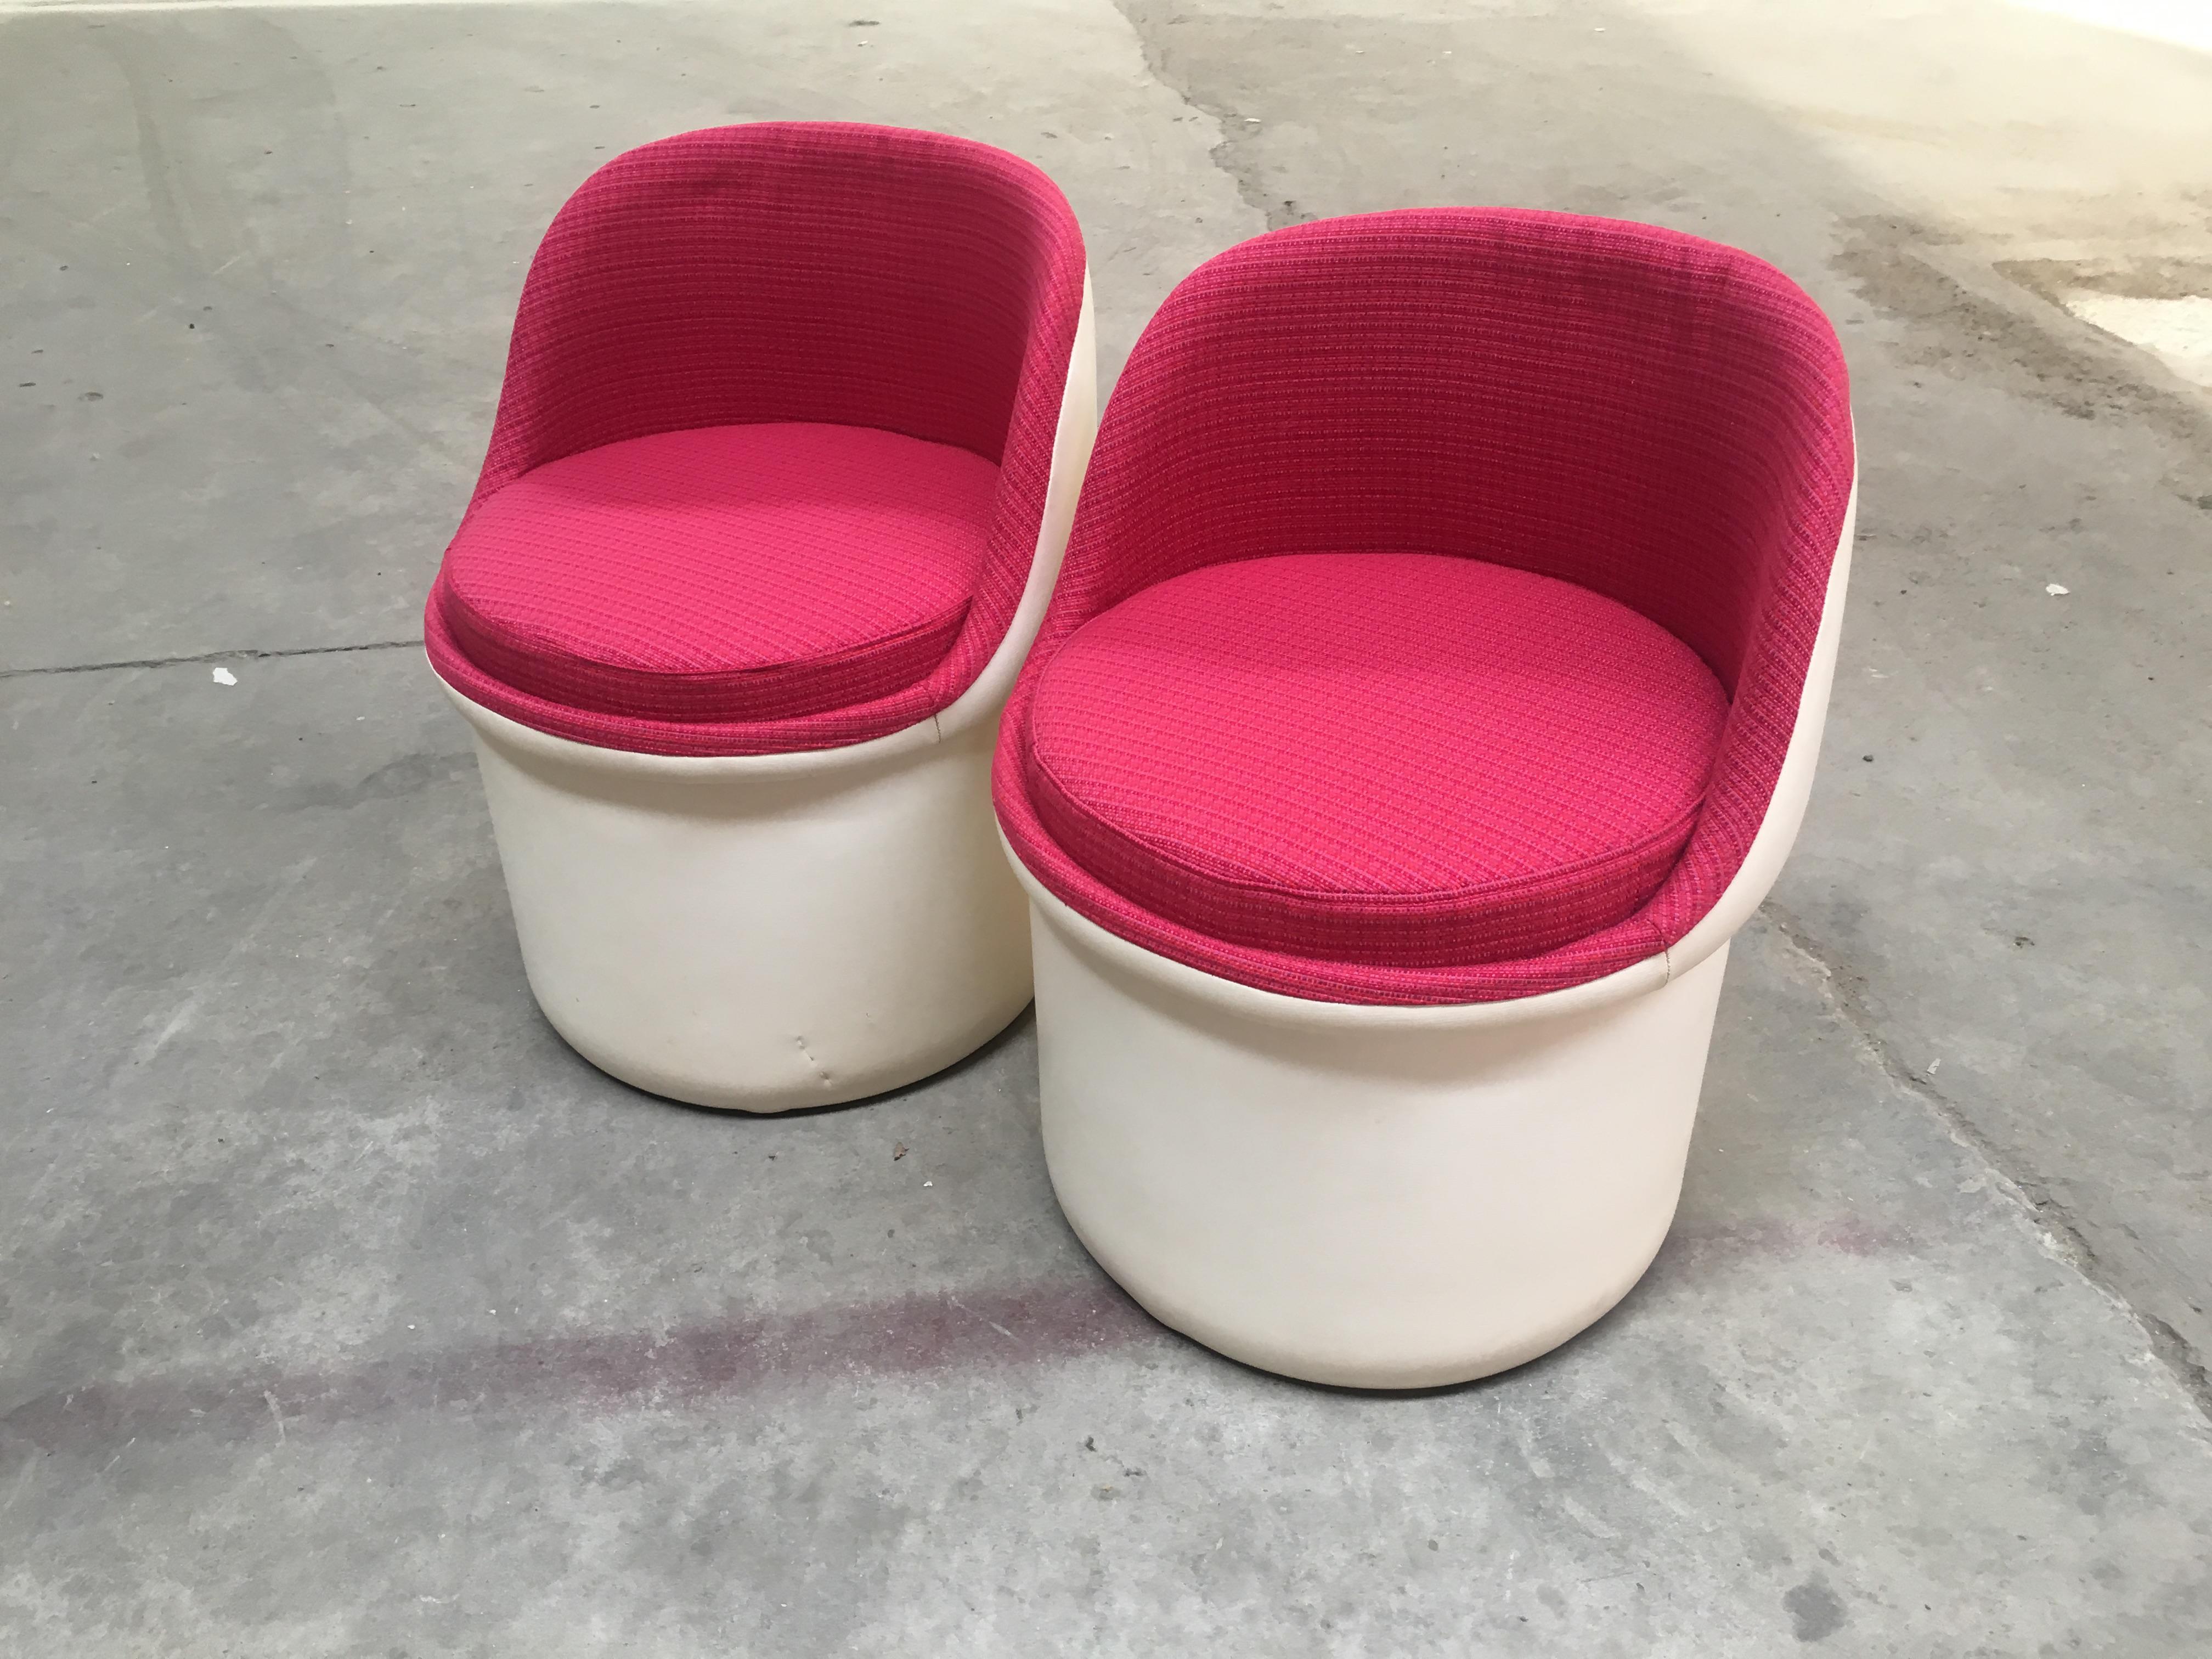 Mid-Century Modern Italienisch Paar Kunstleder und Stoff kleine Sessel oder Poufs.
Die Sessel wurden mit einem alten Rubelli-Stoff aus den siebziger Jahren neu gepolstert.
 